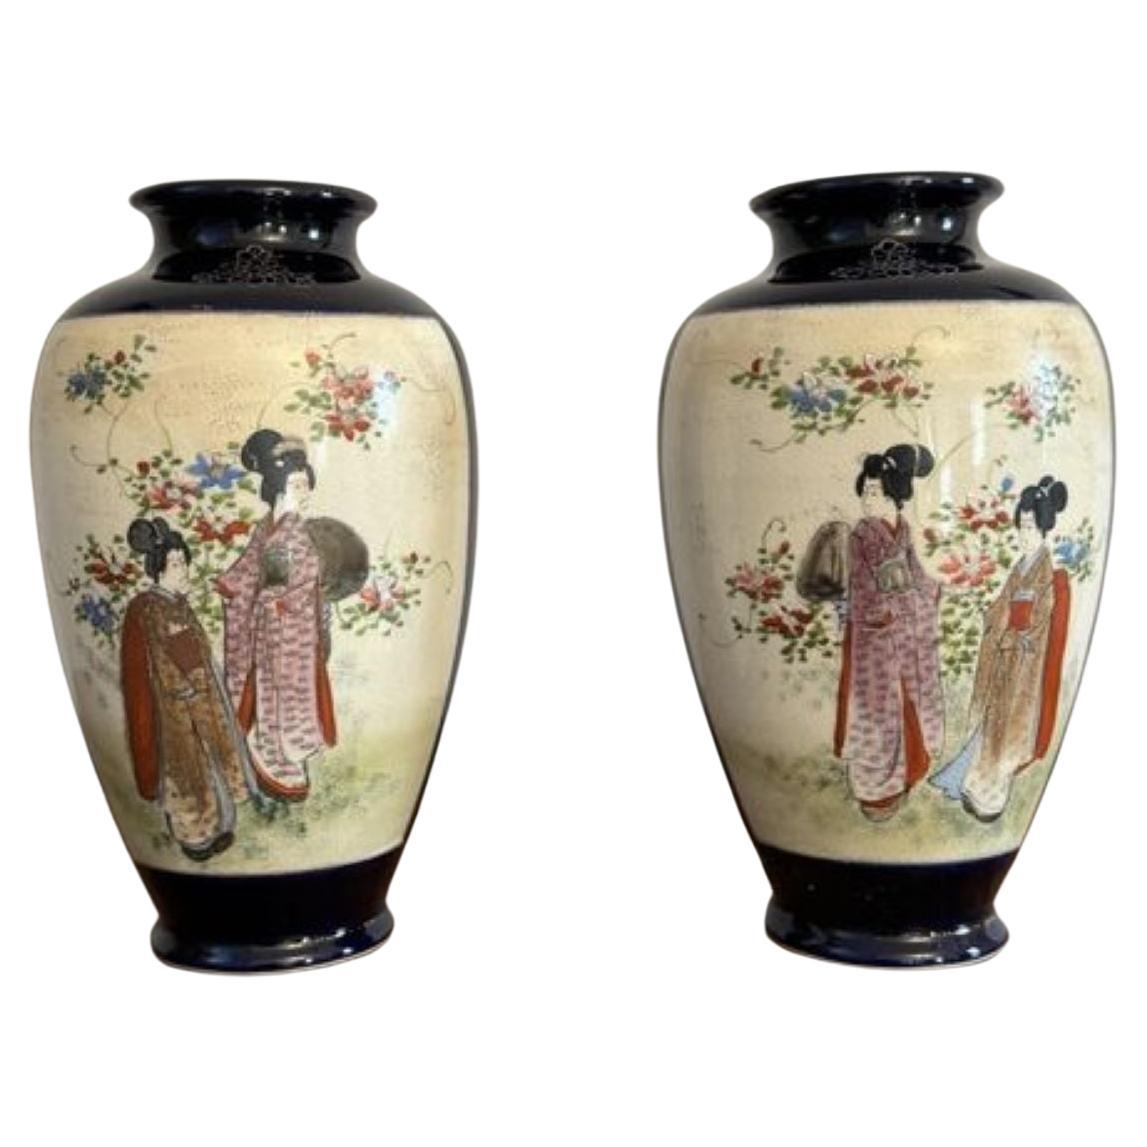 Merveilleuse paire de vases japonais anciens de satsuma 